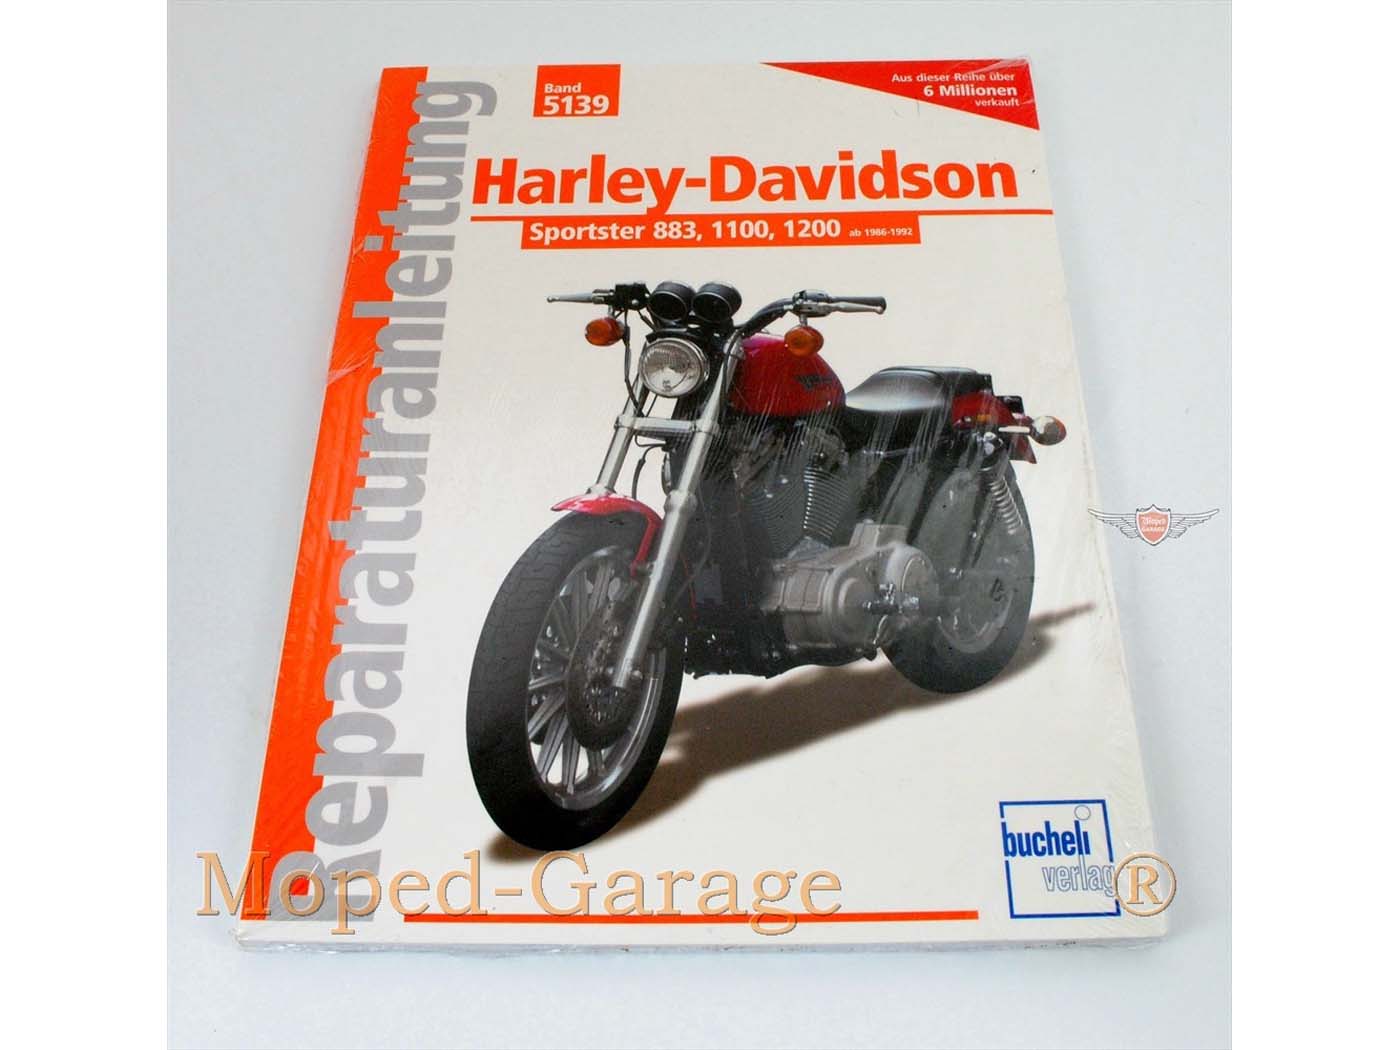 Technische Anleitung für Harley Davidson Sportster 883, Harley Davidso